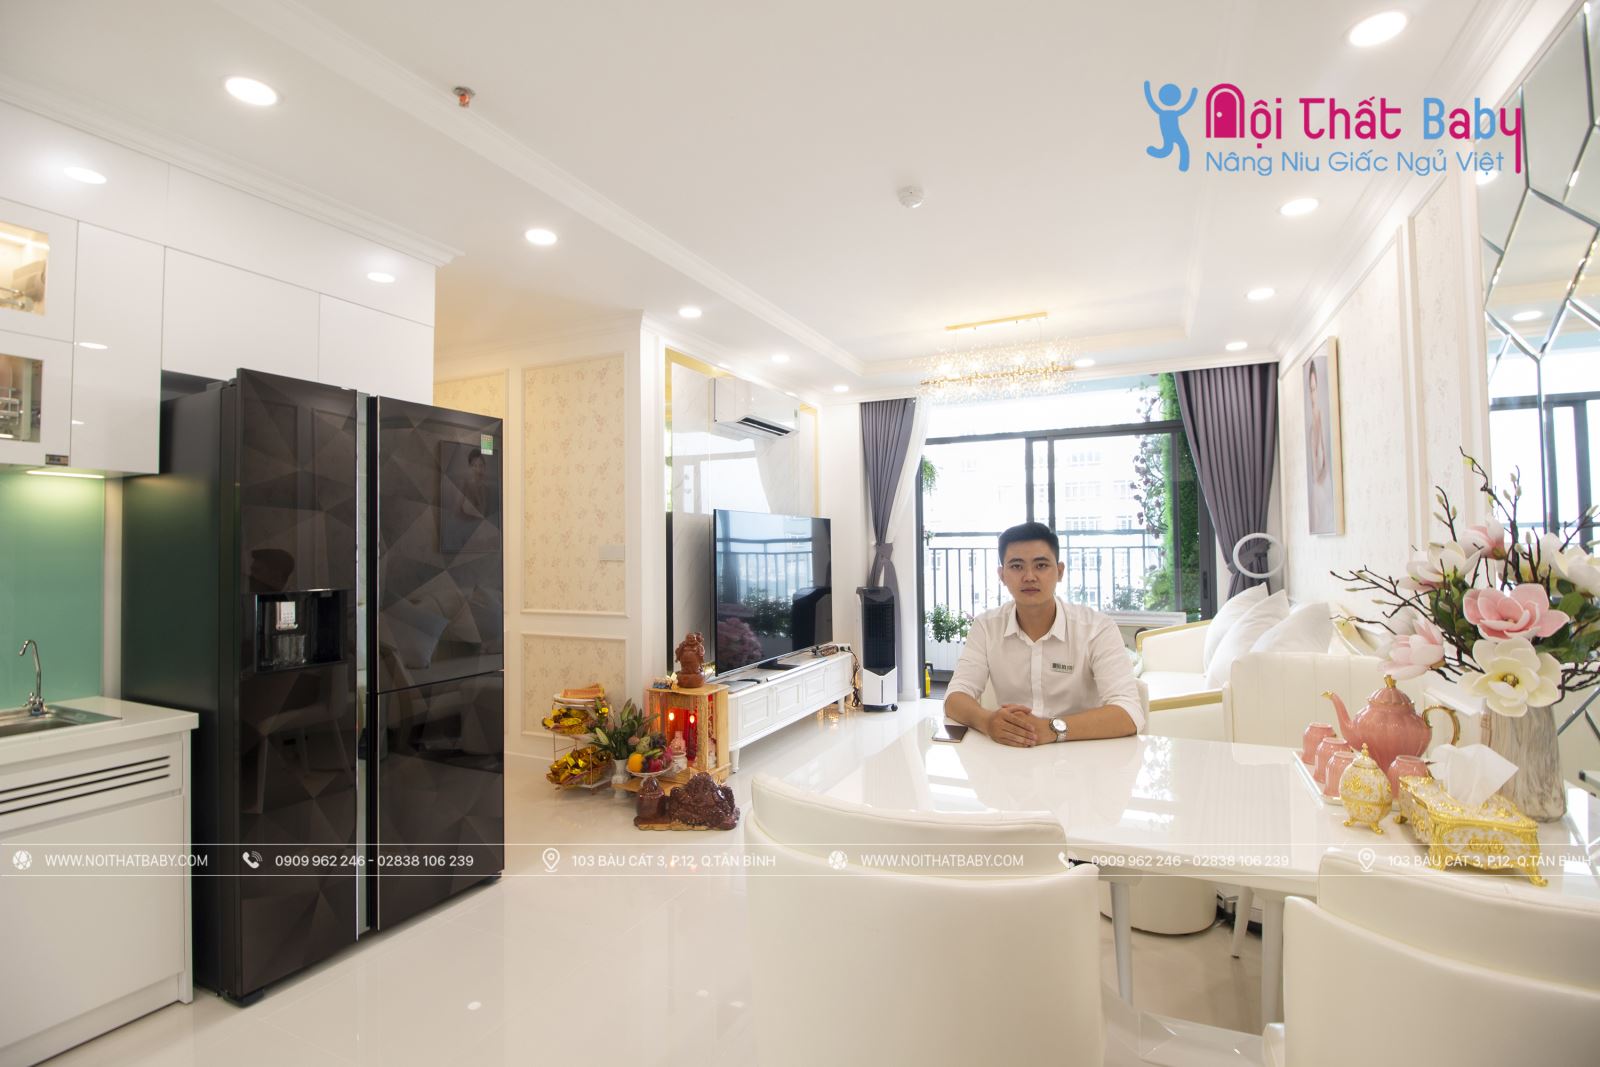 Hình ảnh hoàn thiện thi công nội thất nguyên căn nhà chị Tuyết tại Central Premium Quận 8